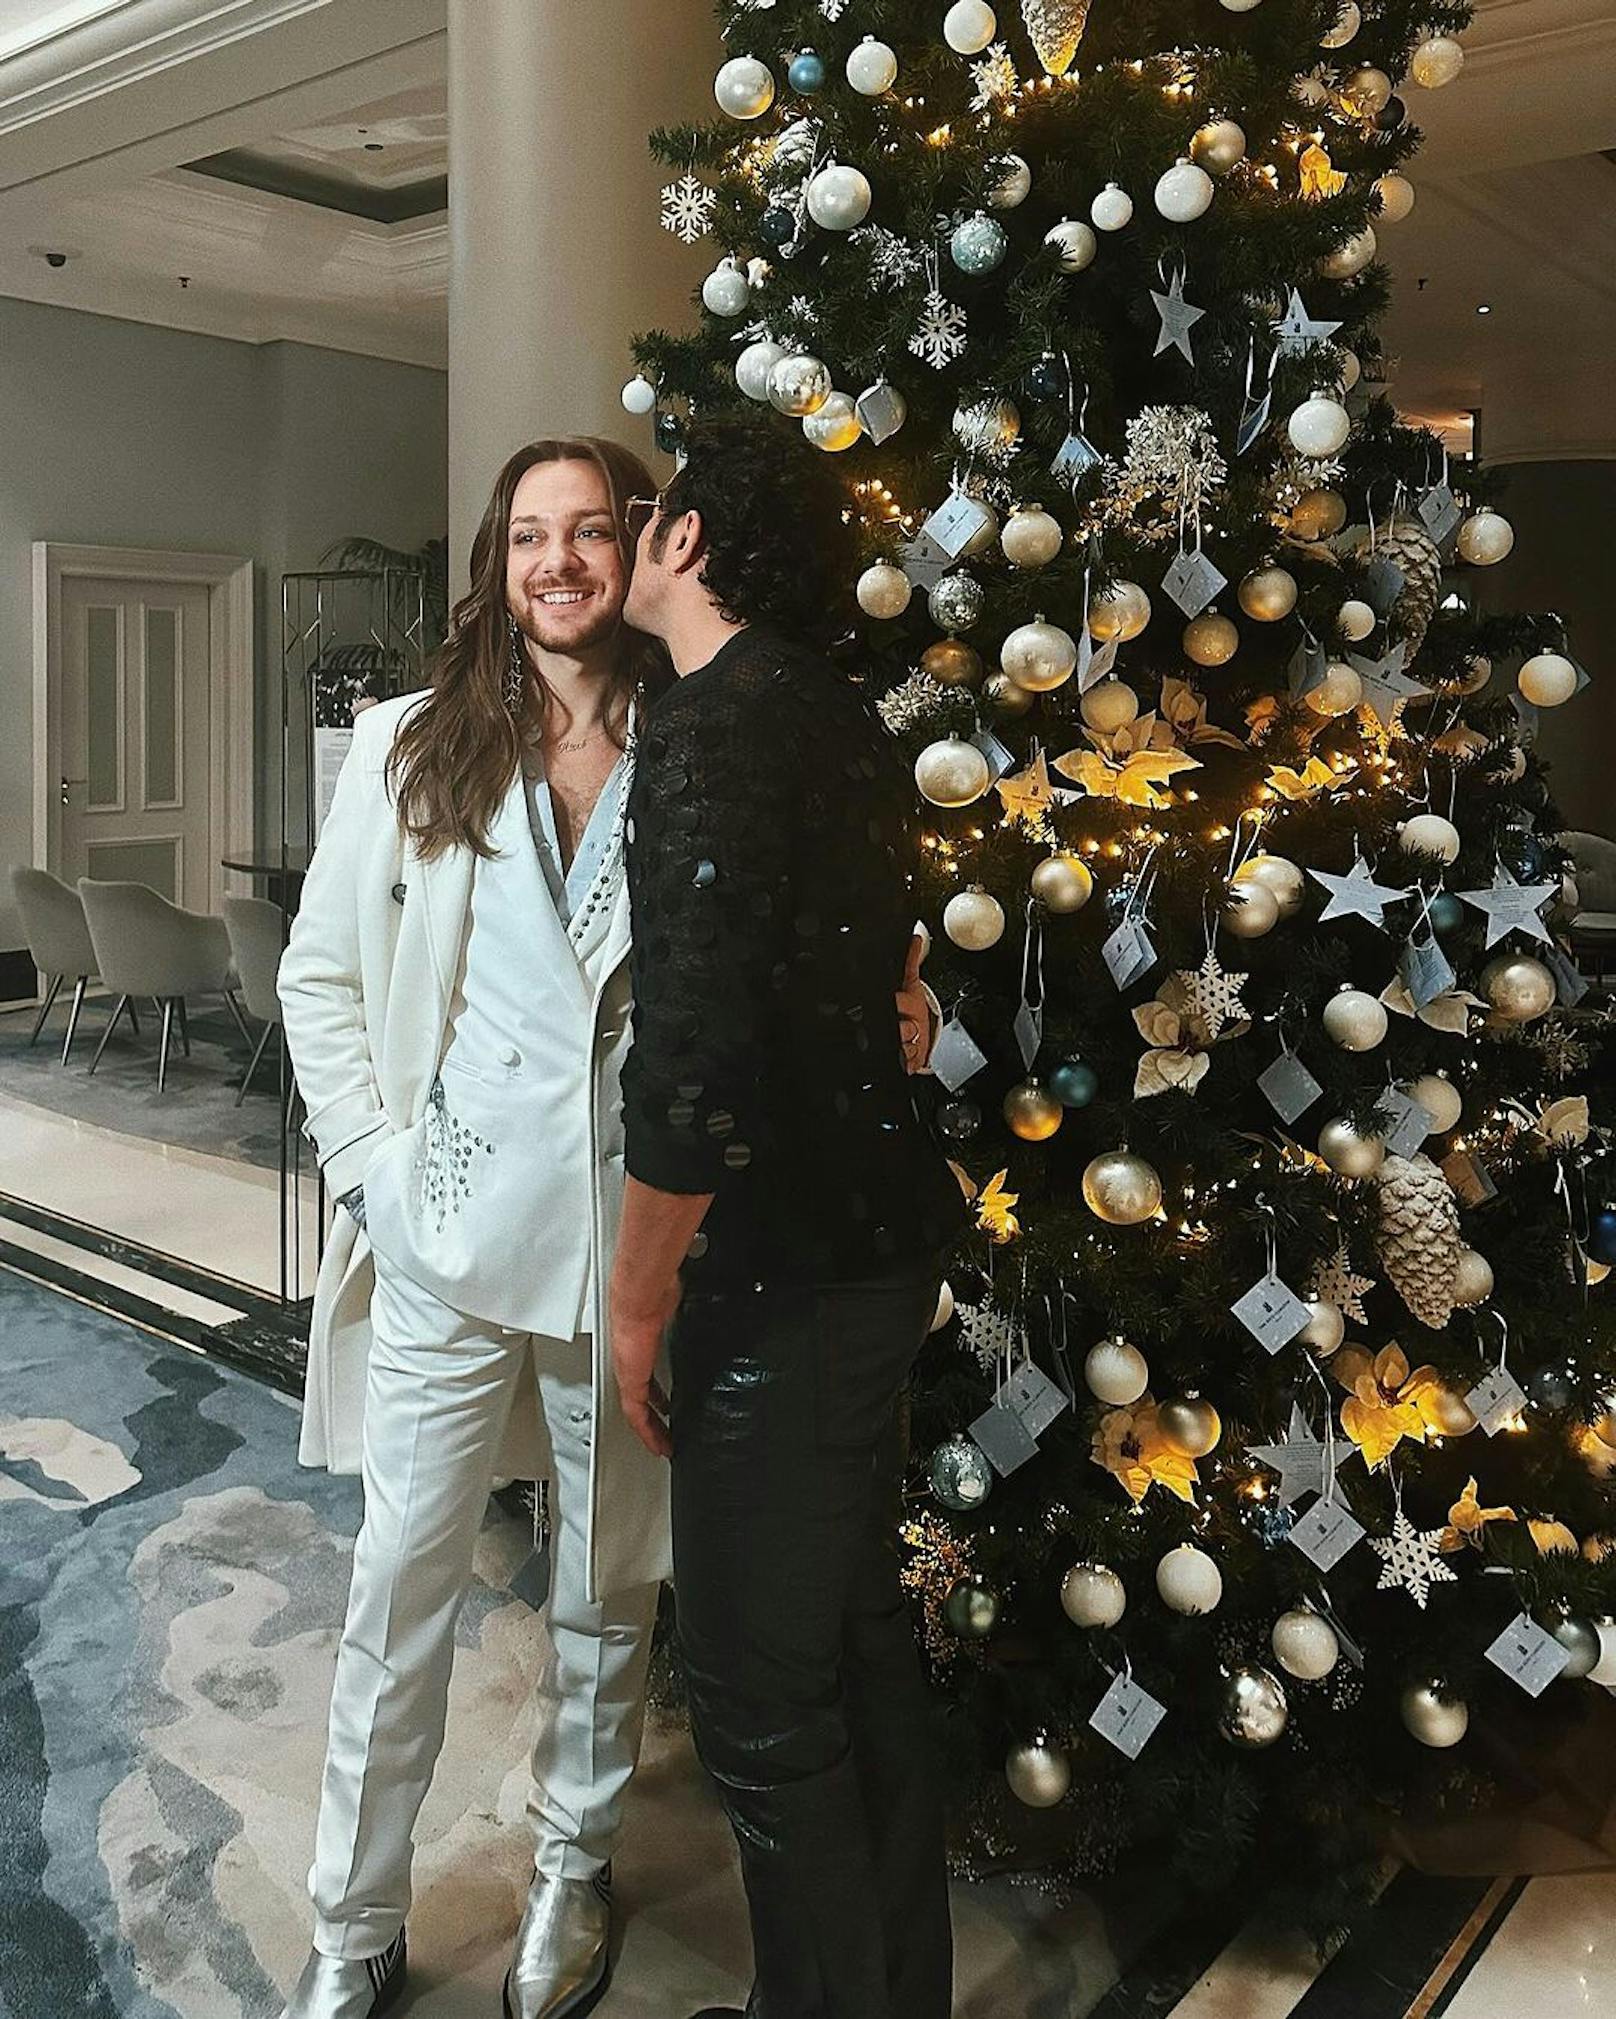 "Mein Weihnachtswunsch wurde bereits erfüllt", verrät Riccardo Simonetti unter dem Bild. Der Langzeit-Single hat sich nämlich mit seiner besseren Hälfte verlobt.